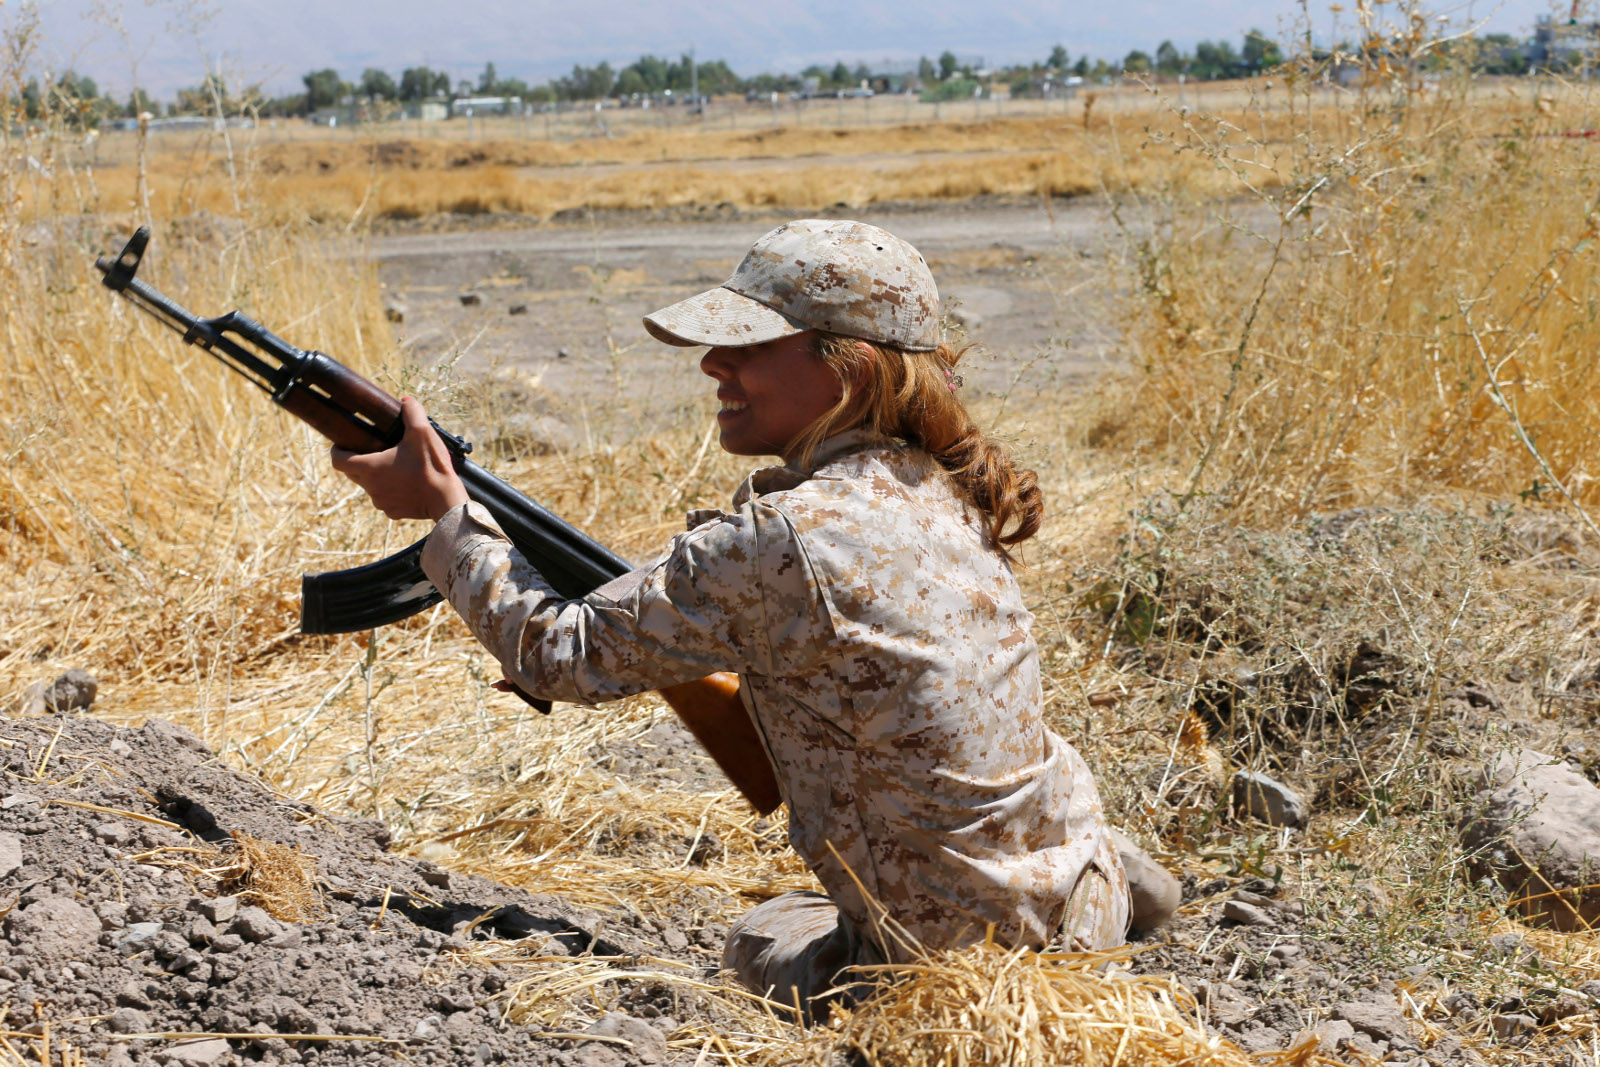 http://d.ibtimes.co.uk/en/full/1400212/kurdish-peshmerga-female-fighters-09.jpg